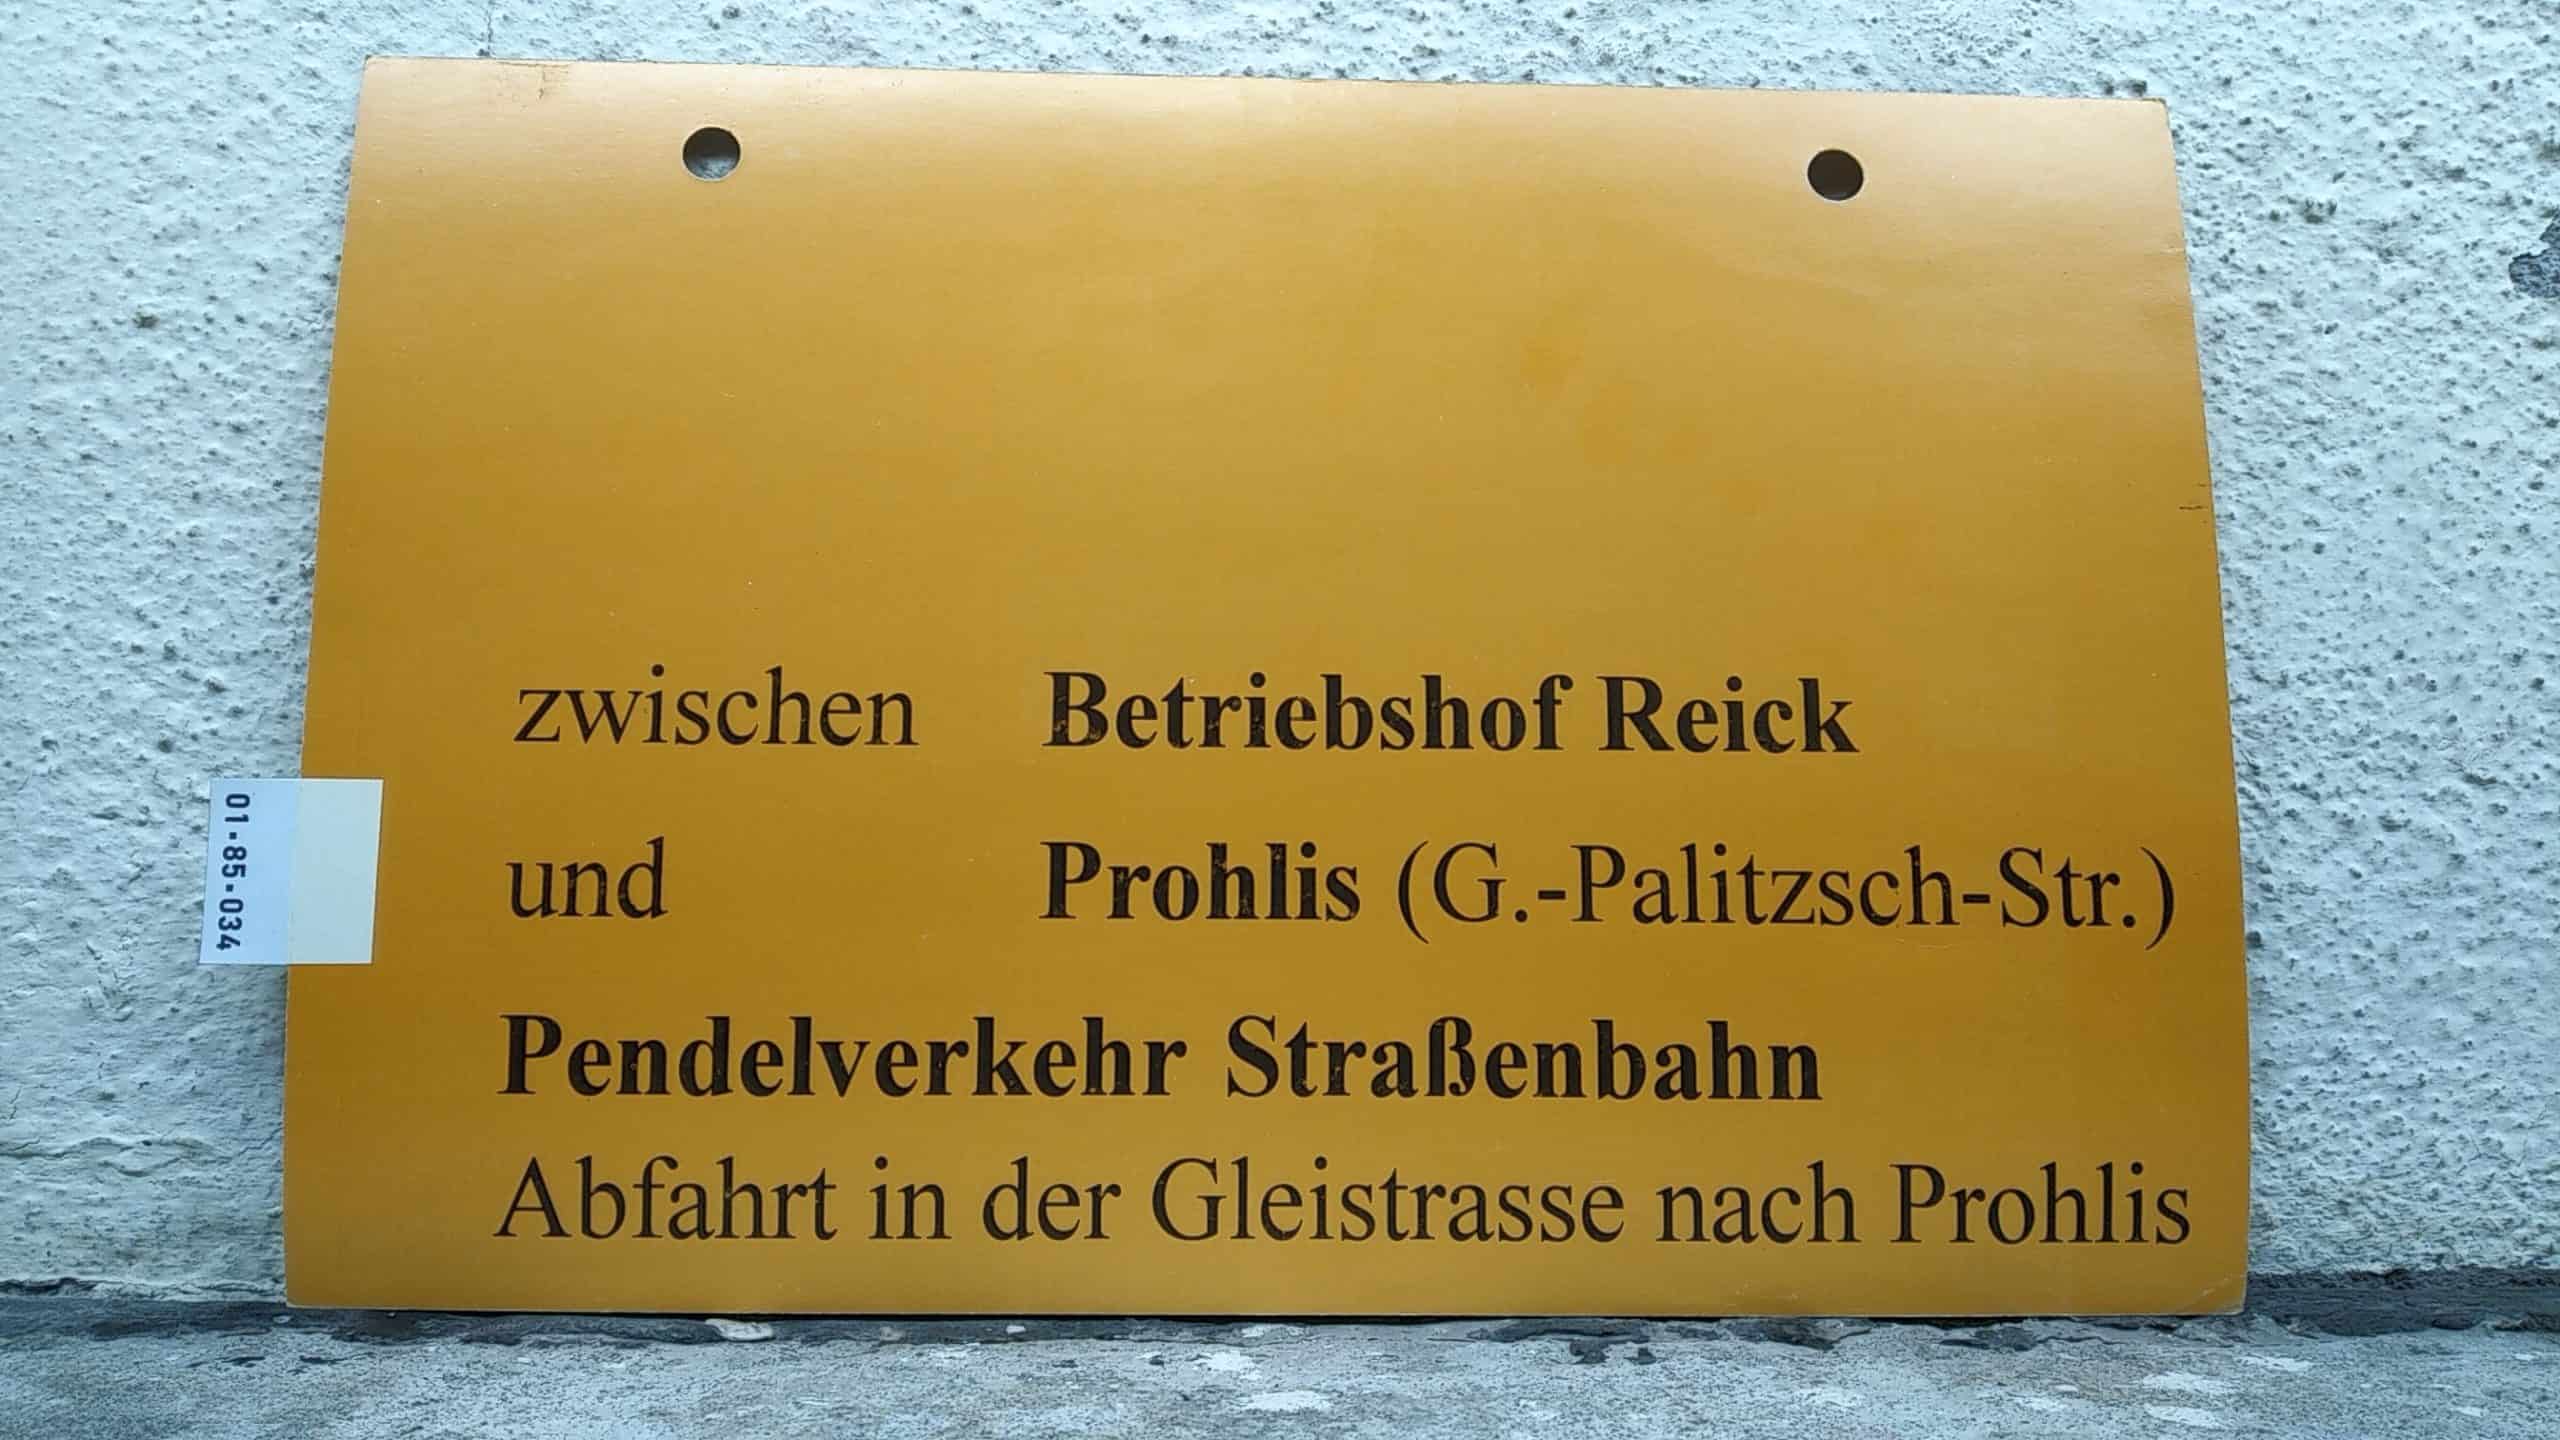 Ein seltenes Straßenbahn-Umleitungsschild aus Dresden: zwischen Betriebshof Reick und Prohlis (G.-Palitzsch-Str.) Pendelverkehr Straßenbahn Abfahrt in der Gleistrasse nach Prohlis